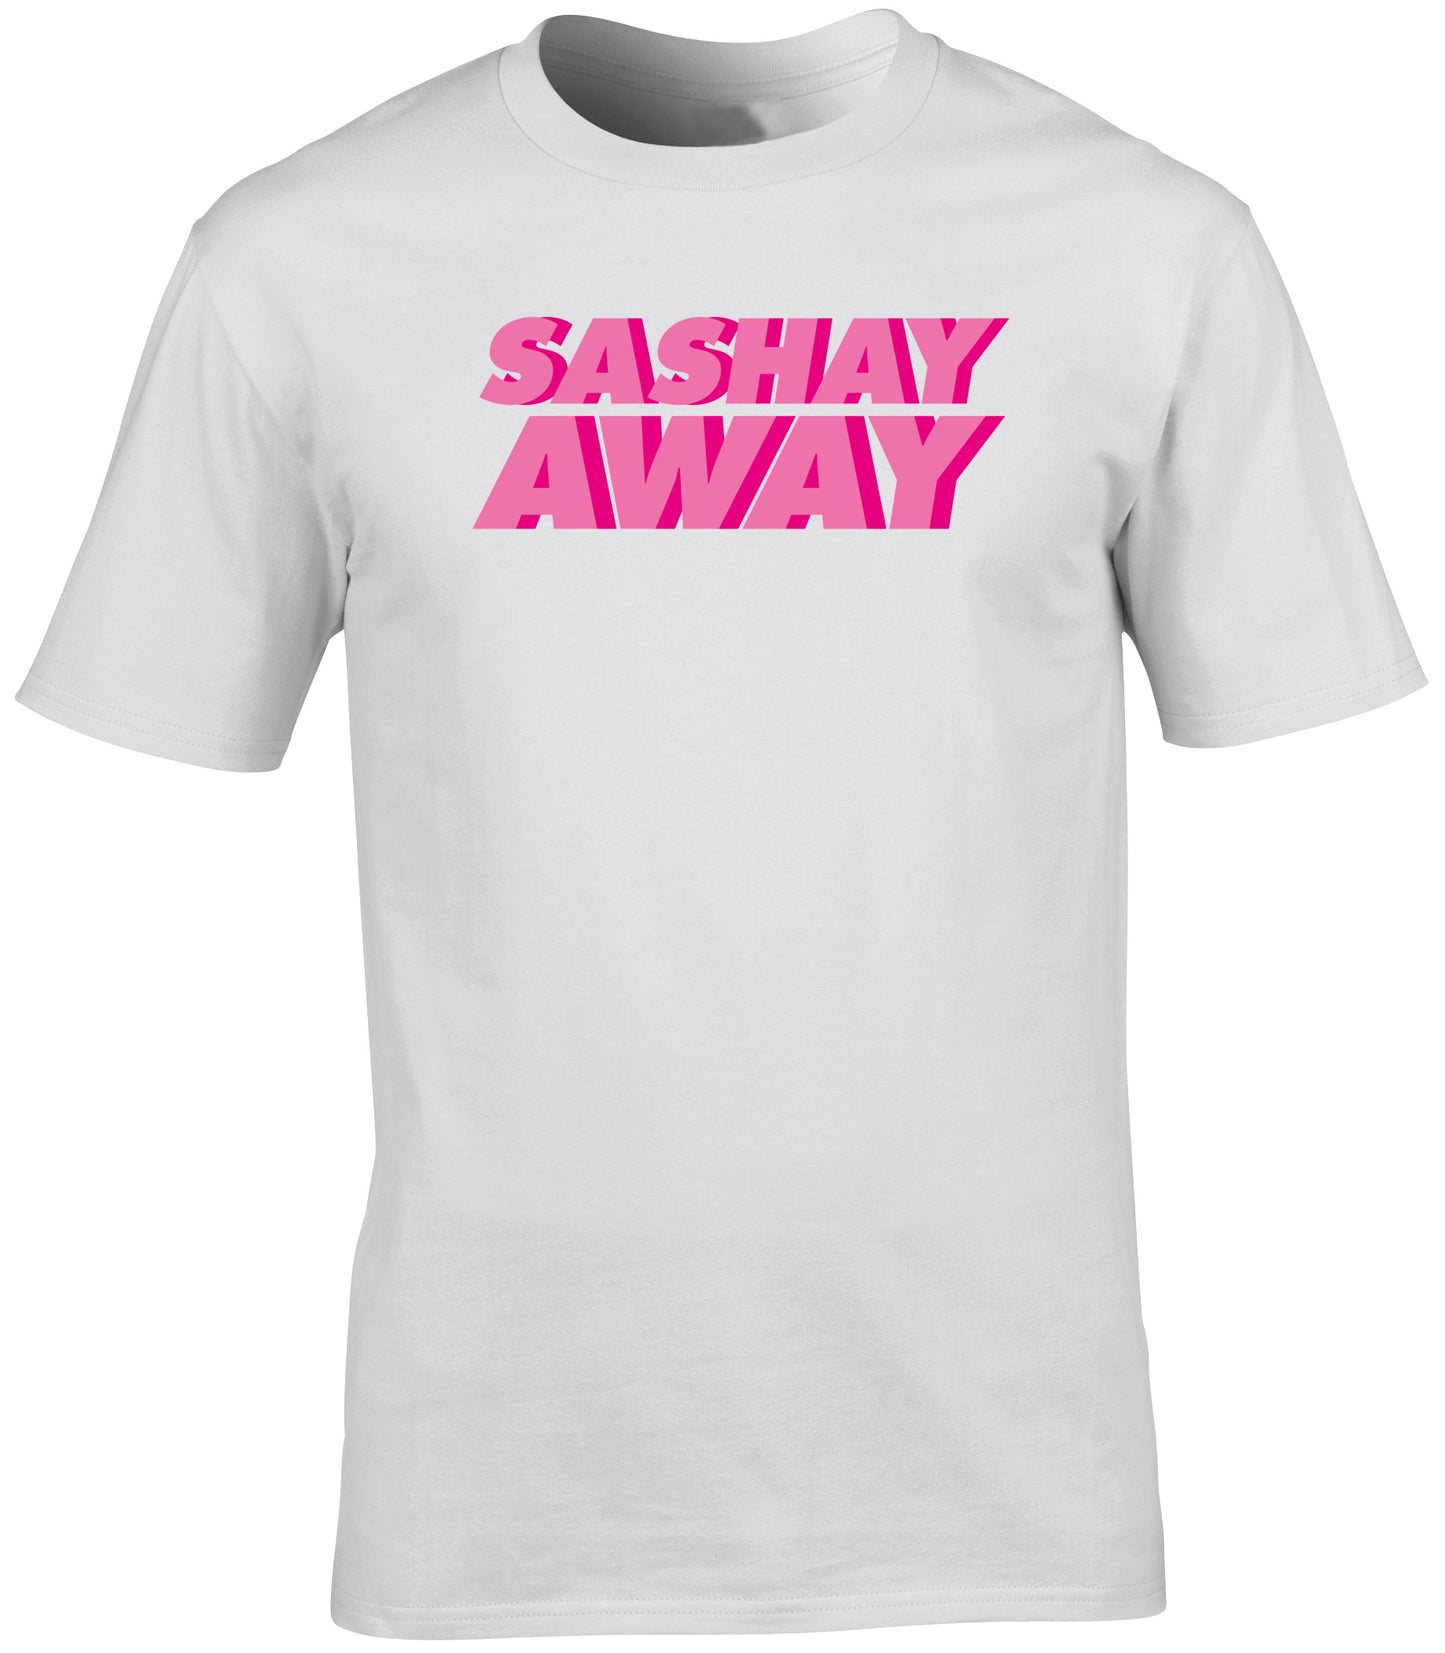 Sashay away unisex t-shirt